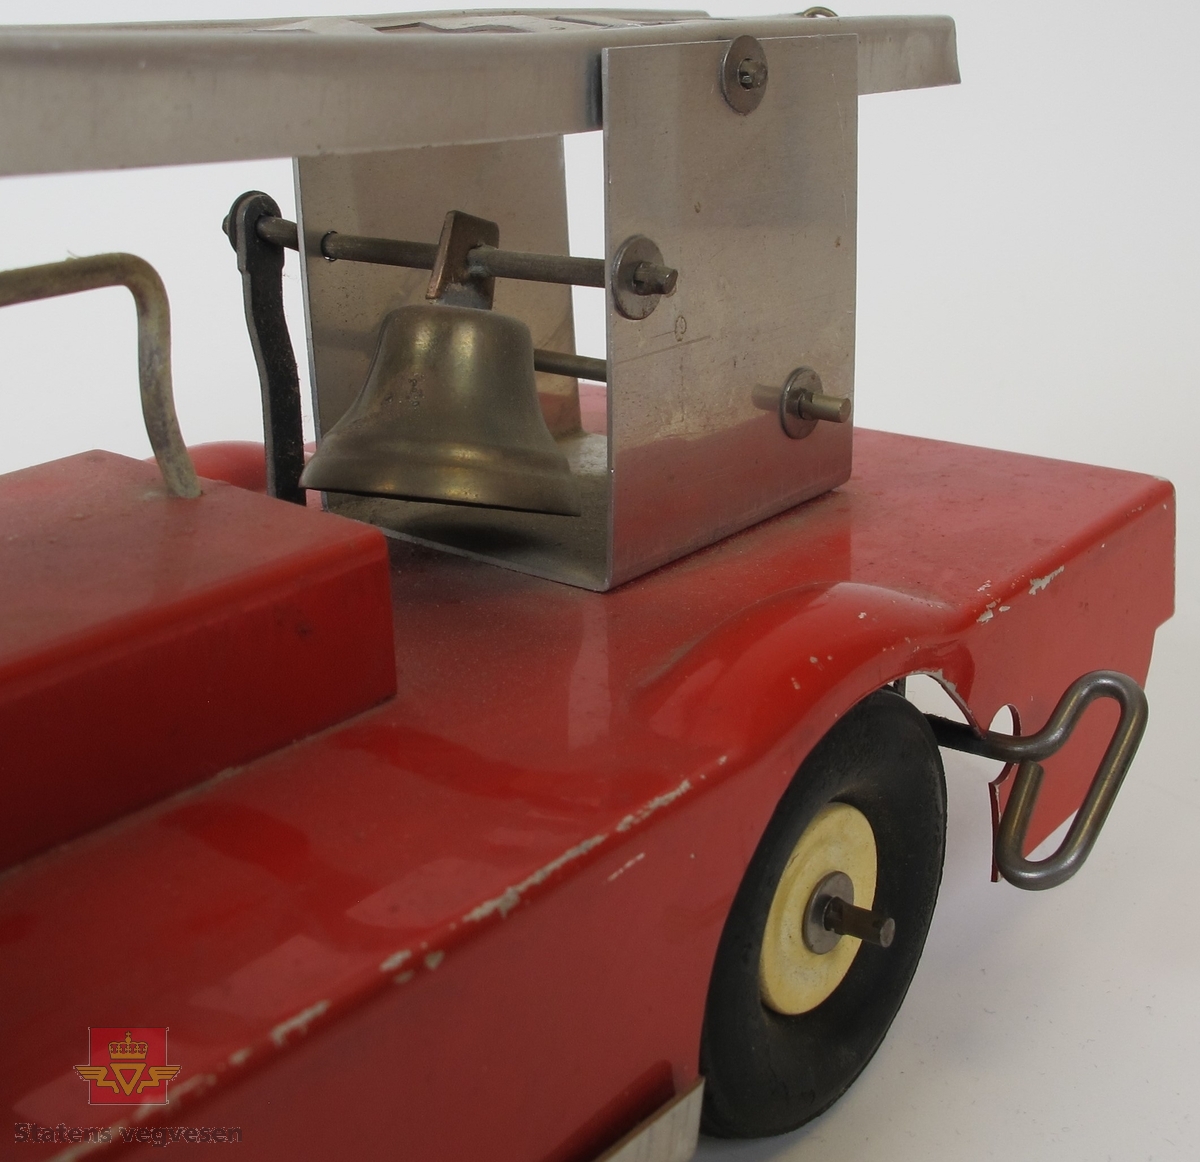 Opptrekkbar lekebil (brannbil) med stige som kan heves og senkes med eget sveive-håndtak. Laget hovedsakelig av metall. Opptrekkeren er koblet til bakhjulene og er en form for fremdrift. Bjellen over bakhjulene klirrer når hjulene er i bevegelse.